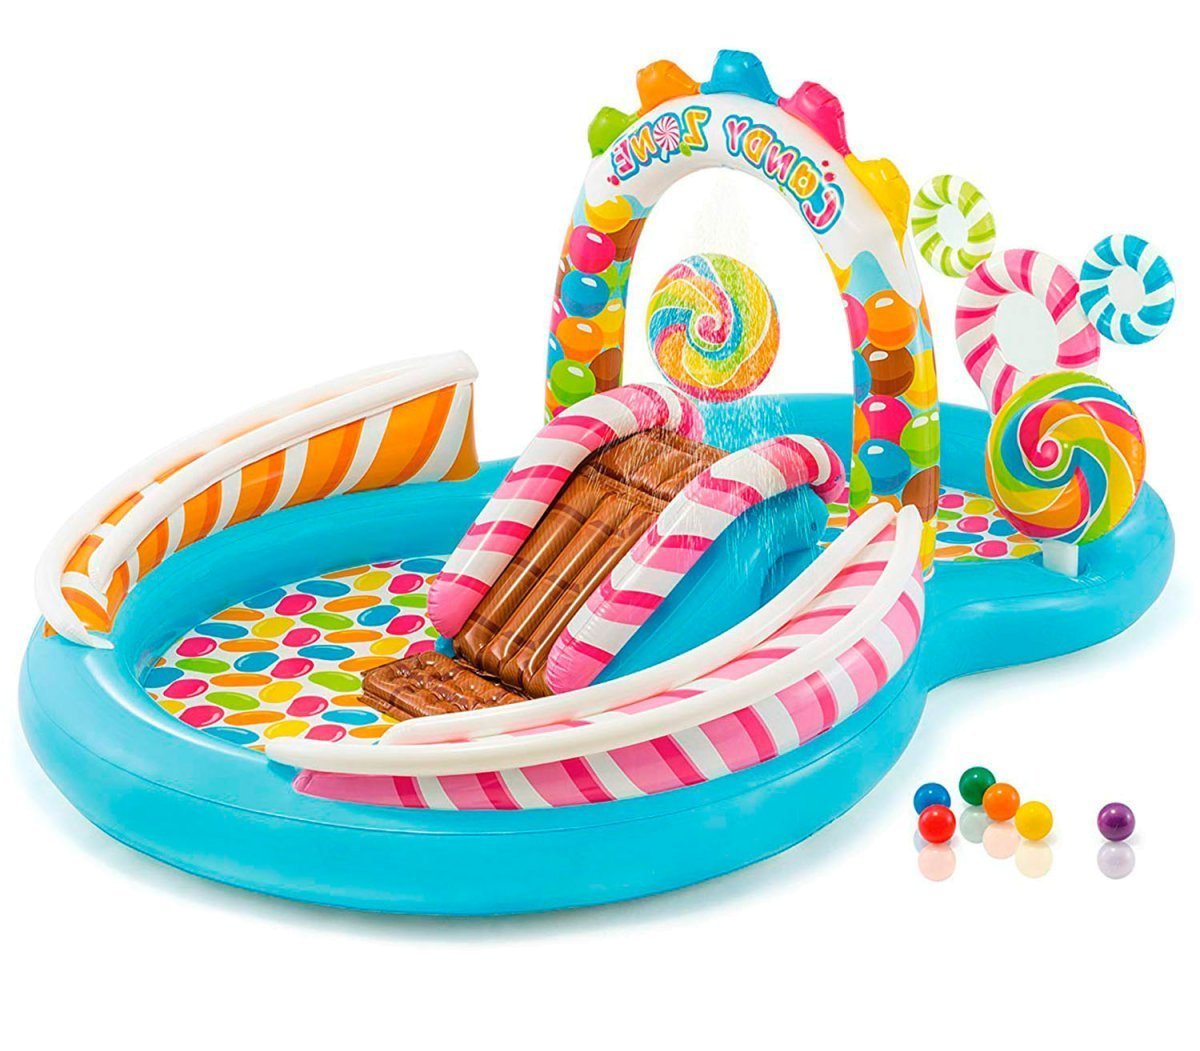 

Детский надувной игровой центр-бассейн Intex 57149 Сладости объем 206 л возраст 3+ с игрушками, фонтаном, горкой и 6 цветными шариками (259 х 191 х 130) цветной (in-57149)